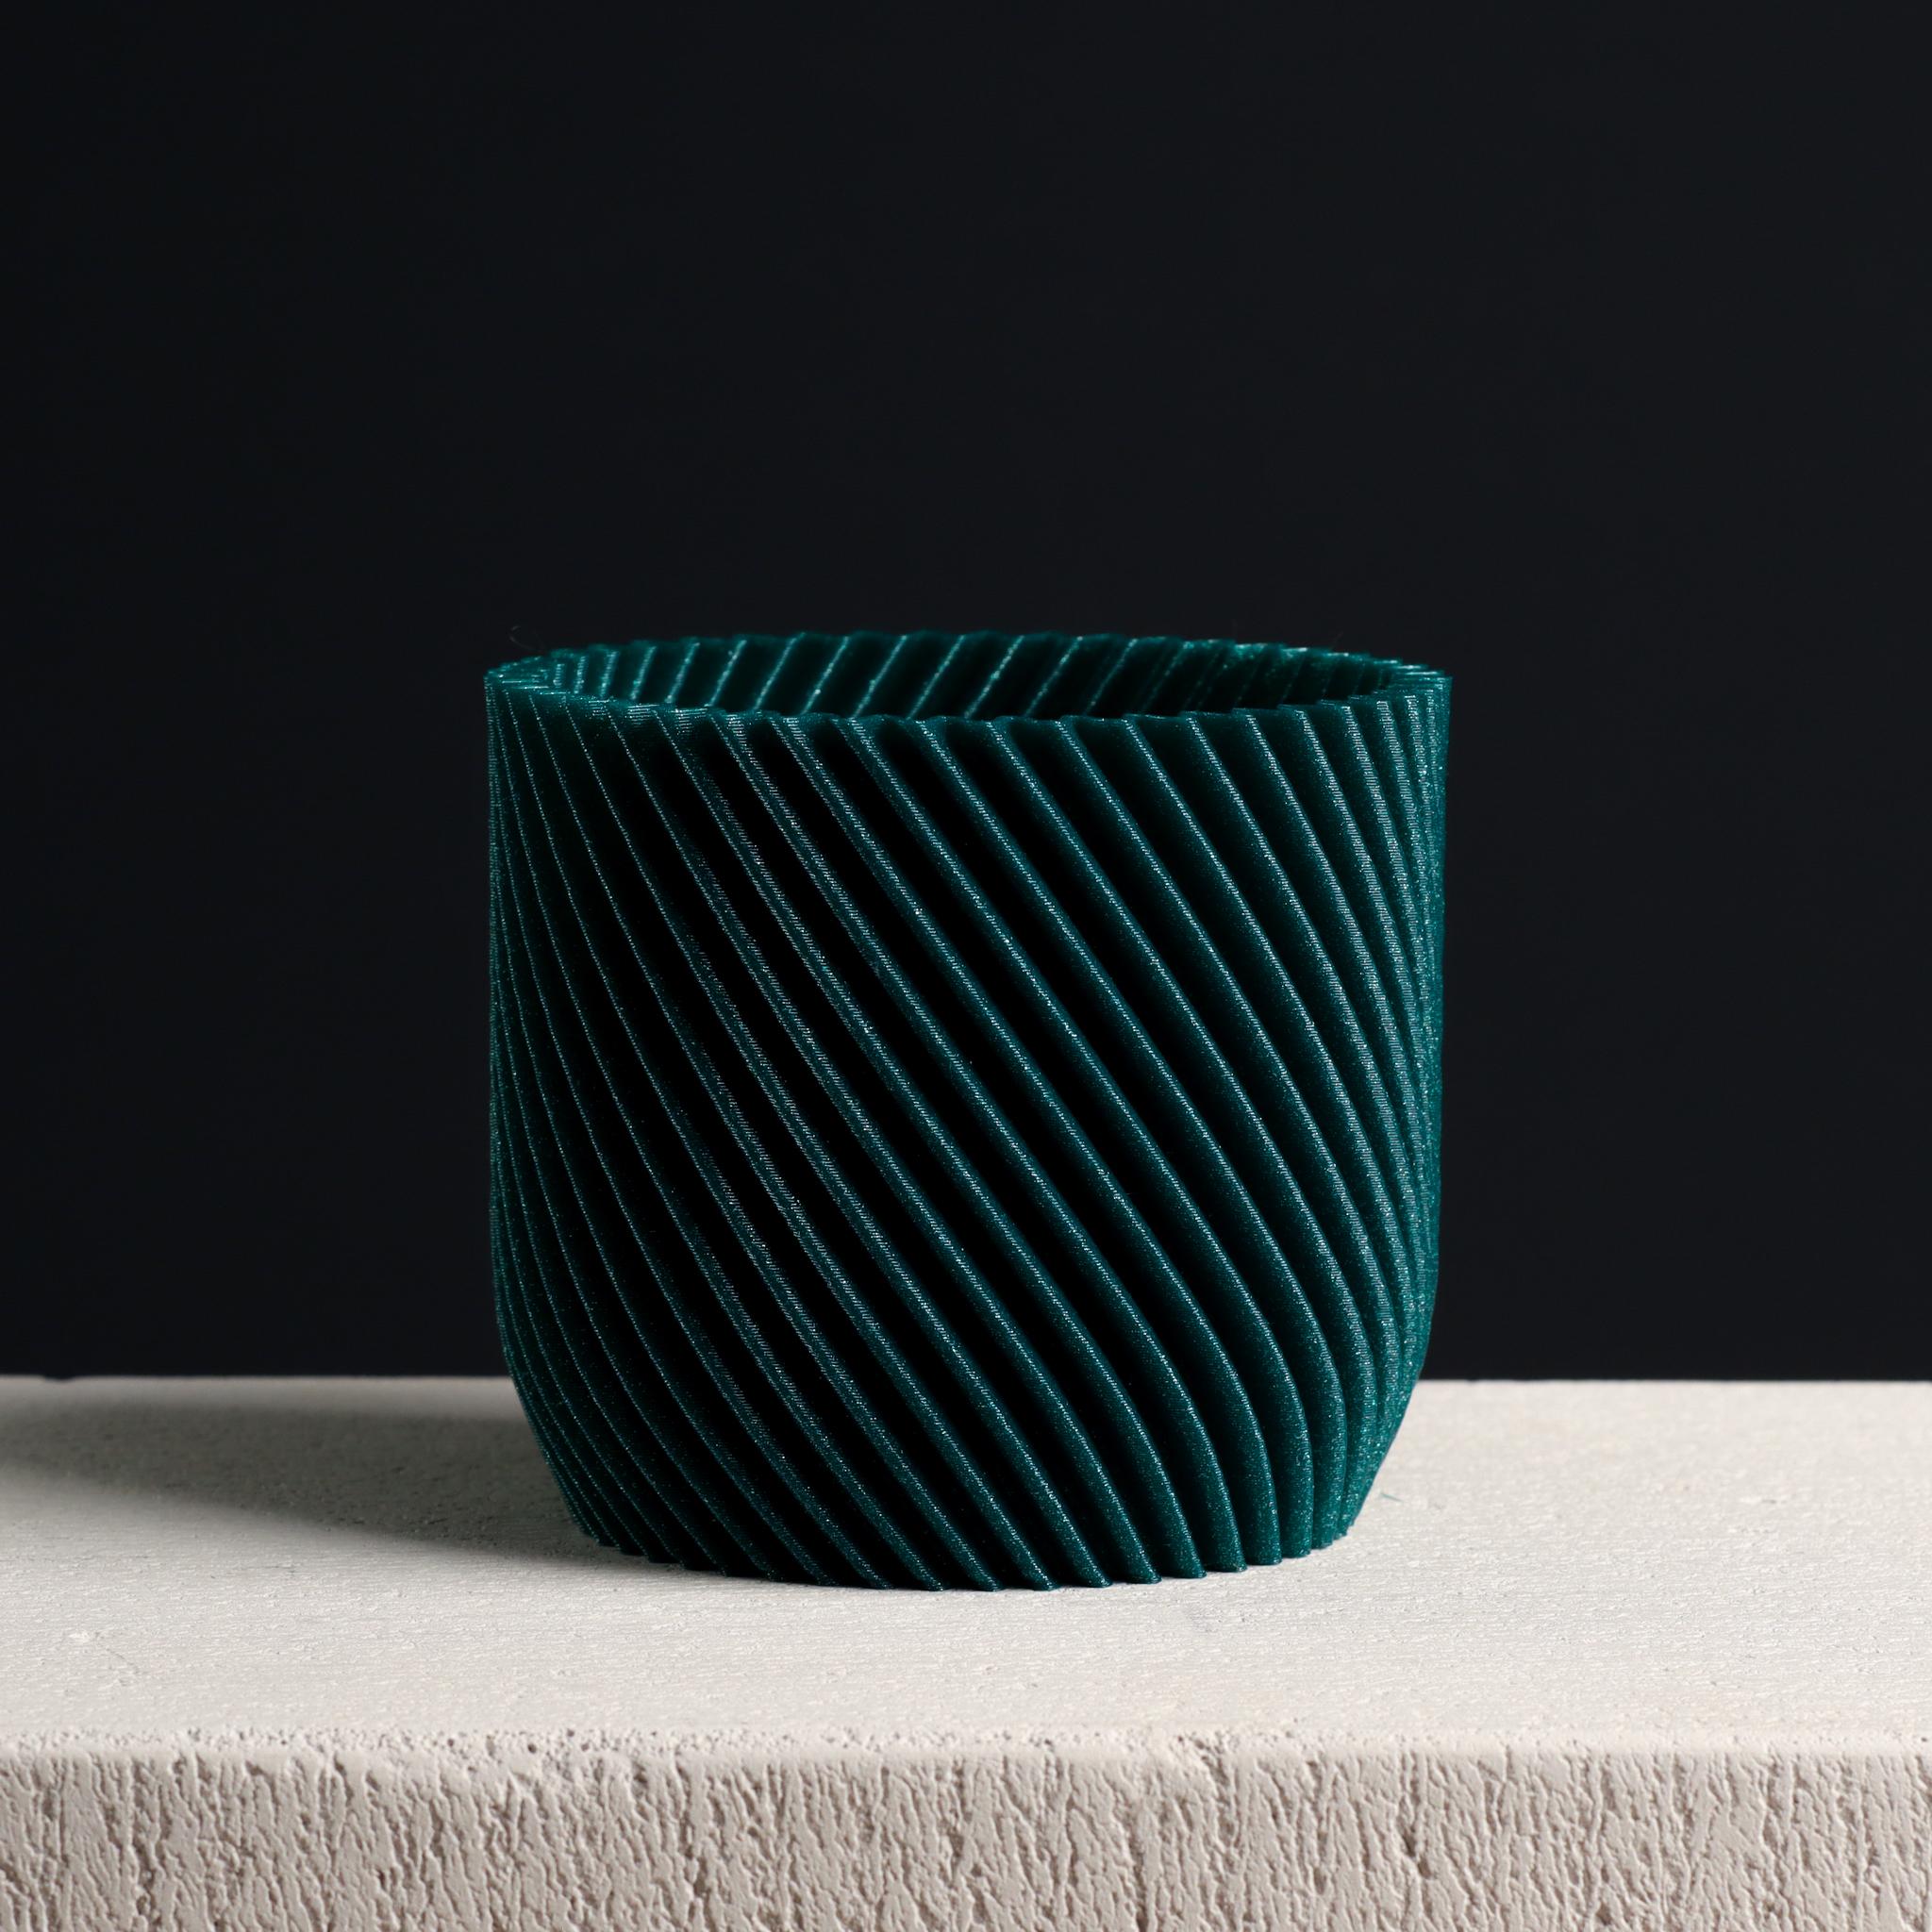  Spiral Cylinder Plant pot, Vase Mode & Shelled  3d model